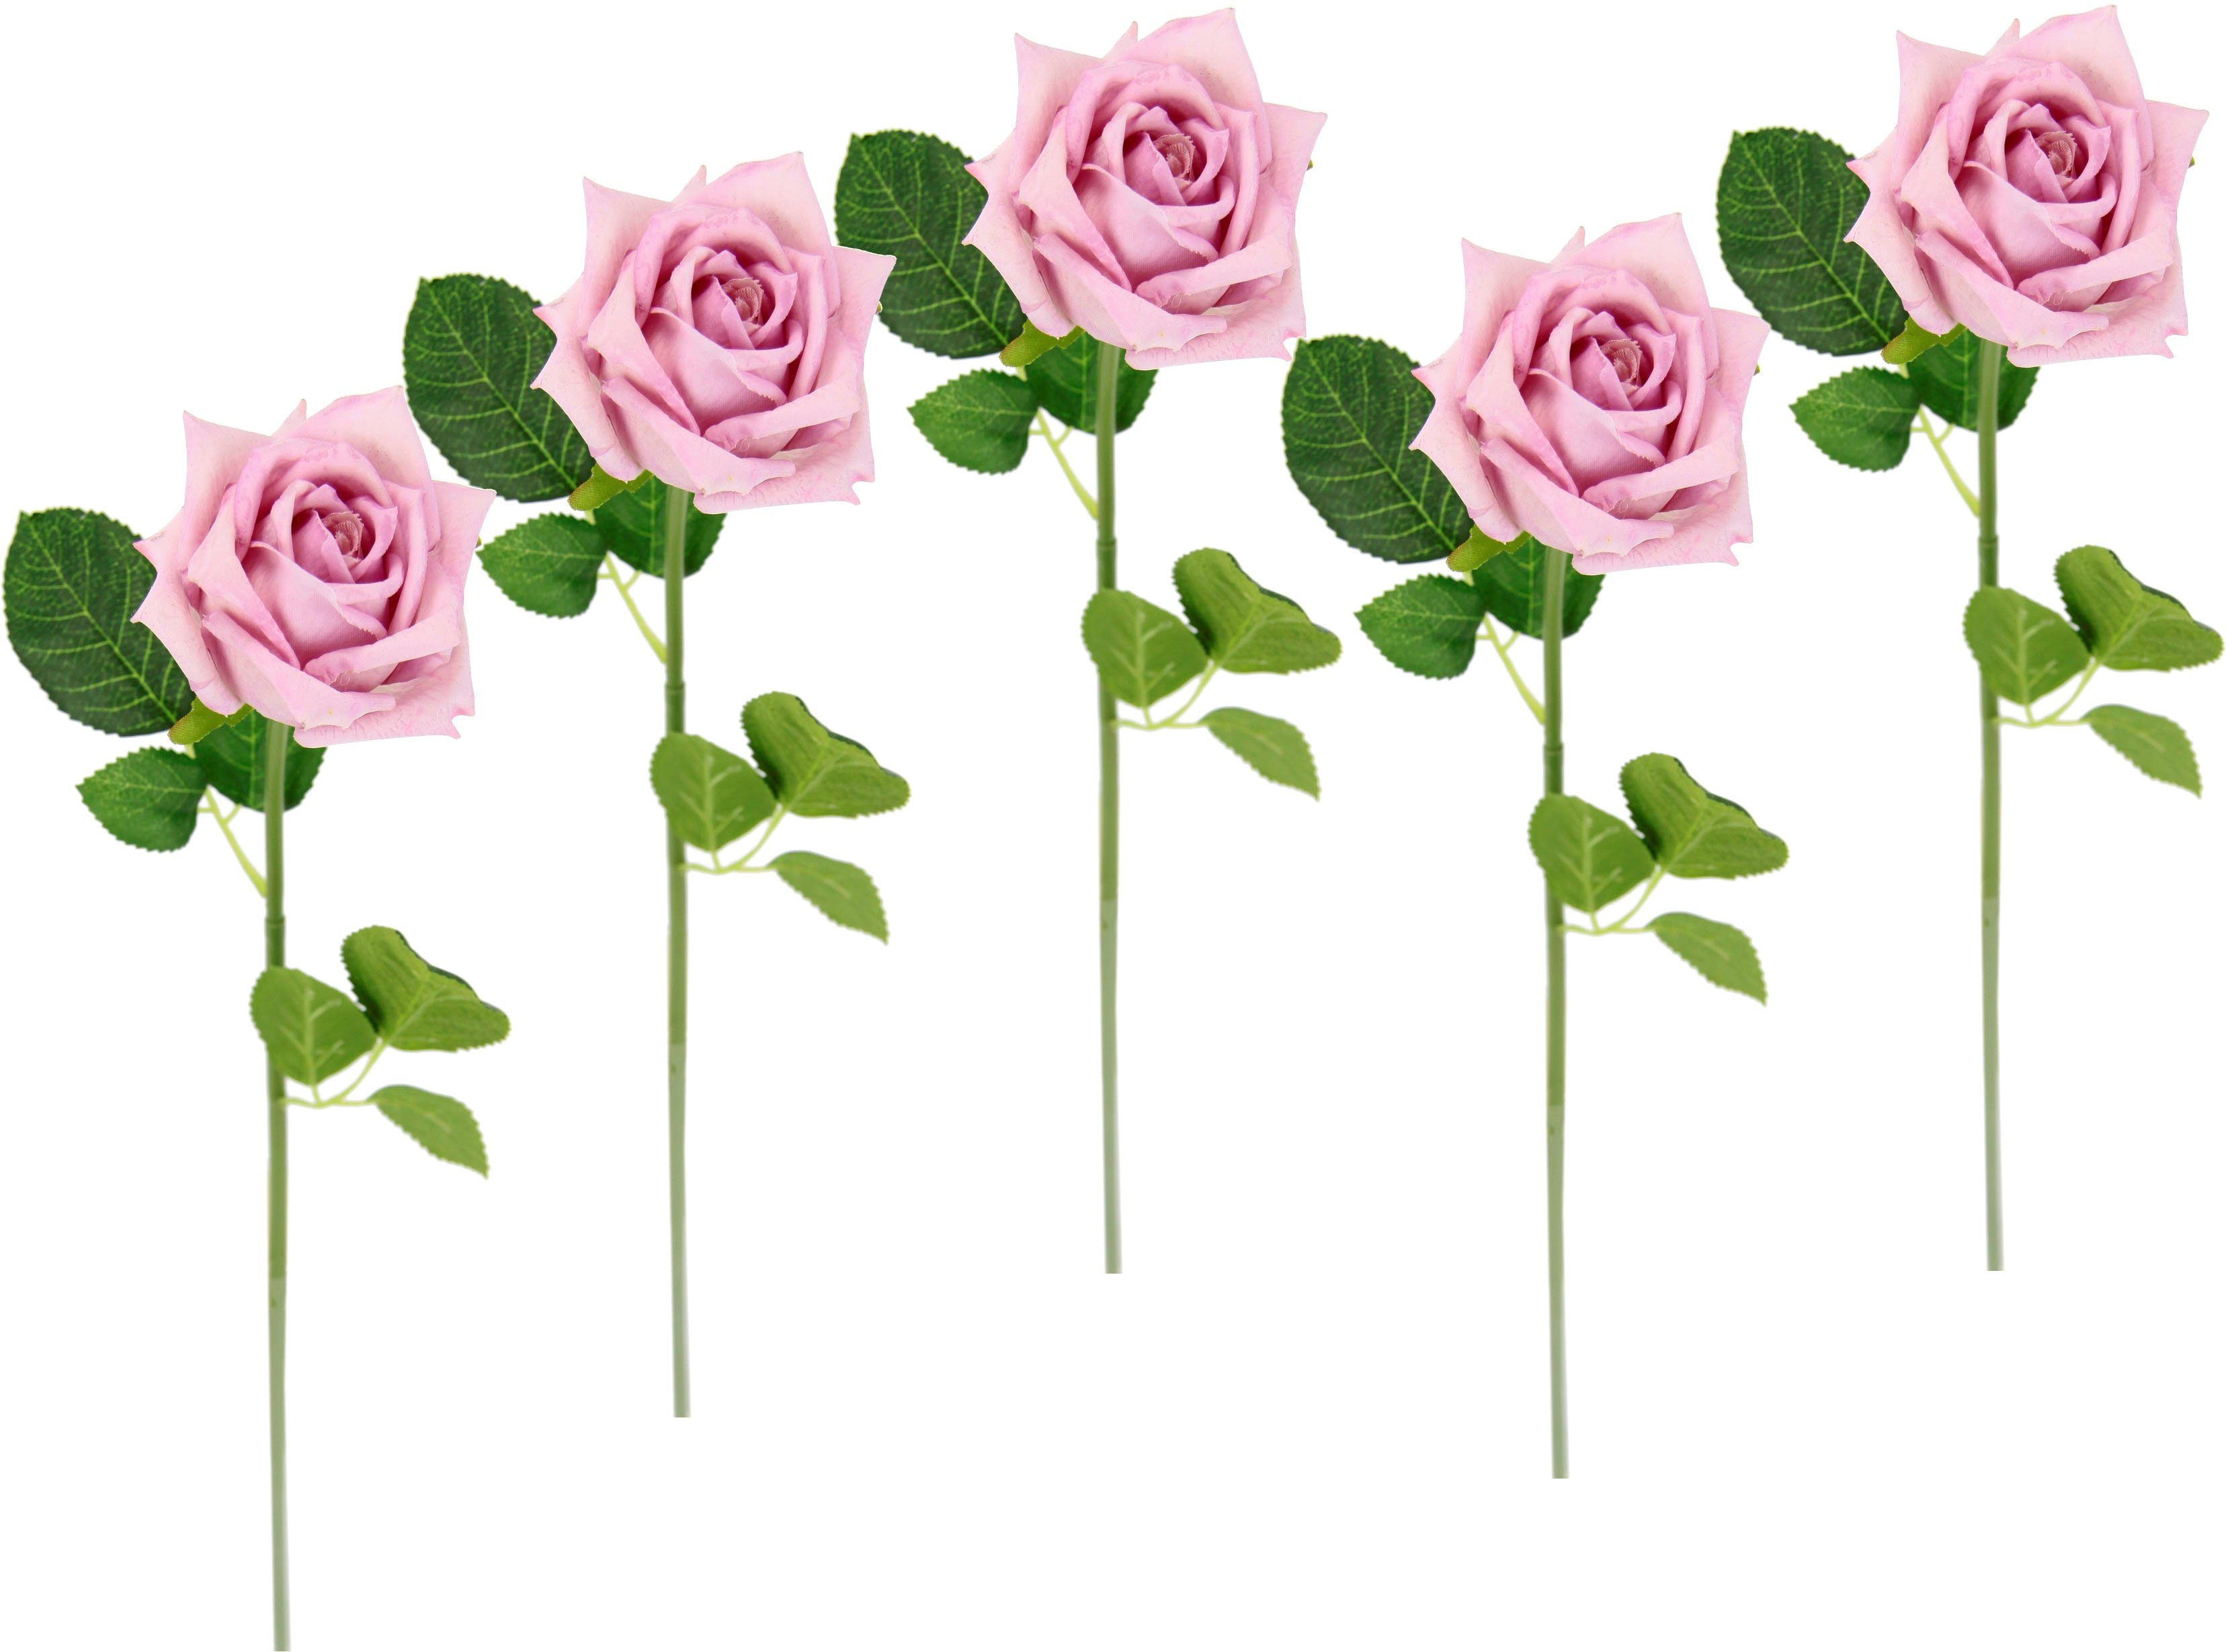 Kunstblume Rose, I.GE.A., Höhe 45 cm, 5er Set künstliche Rosen, Seidenrosen, Bouquet, Kunstzweig, Kunstrose rosa